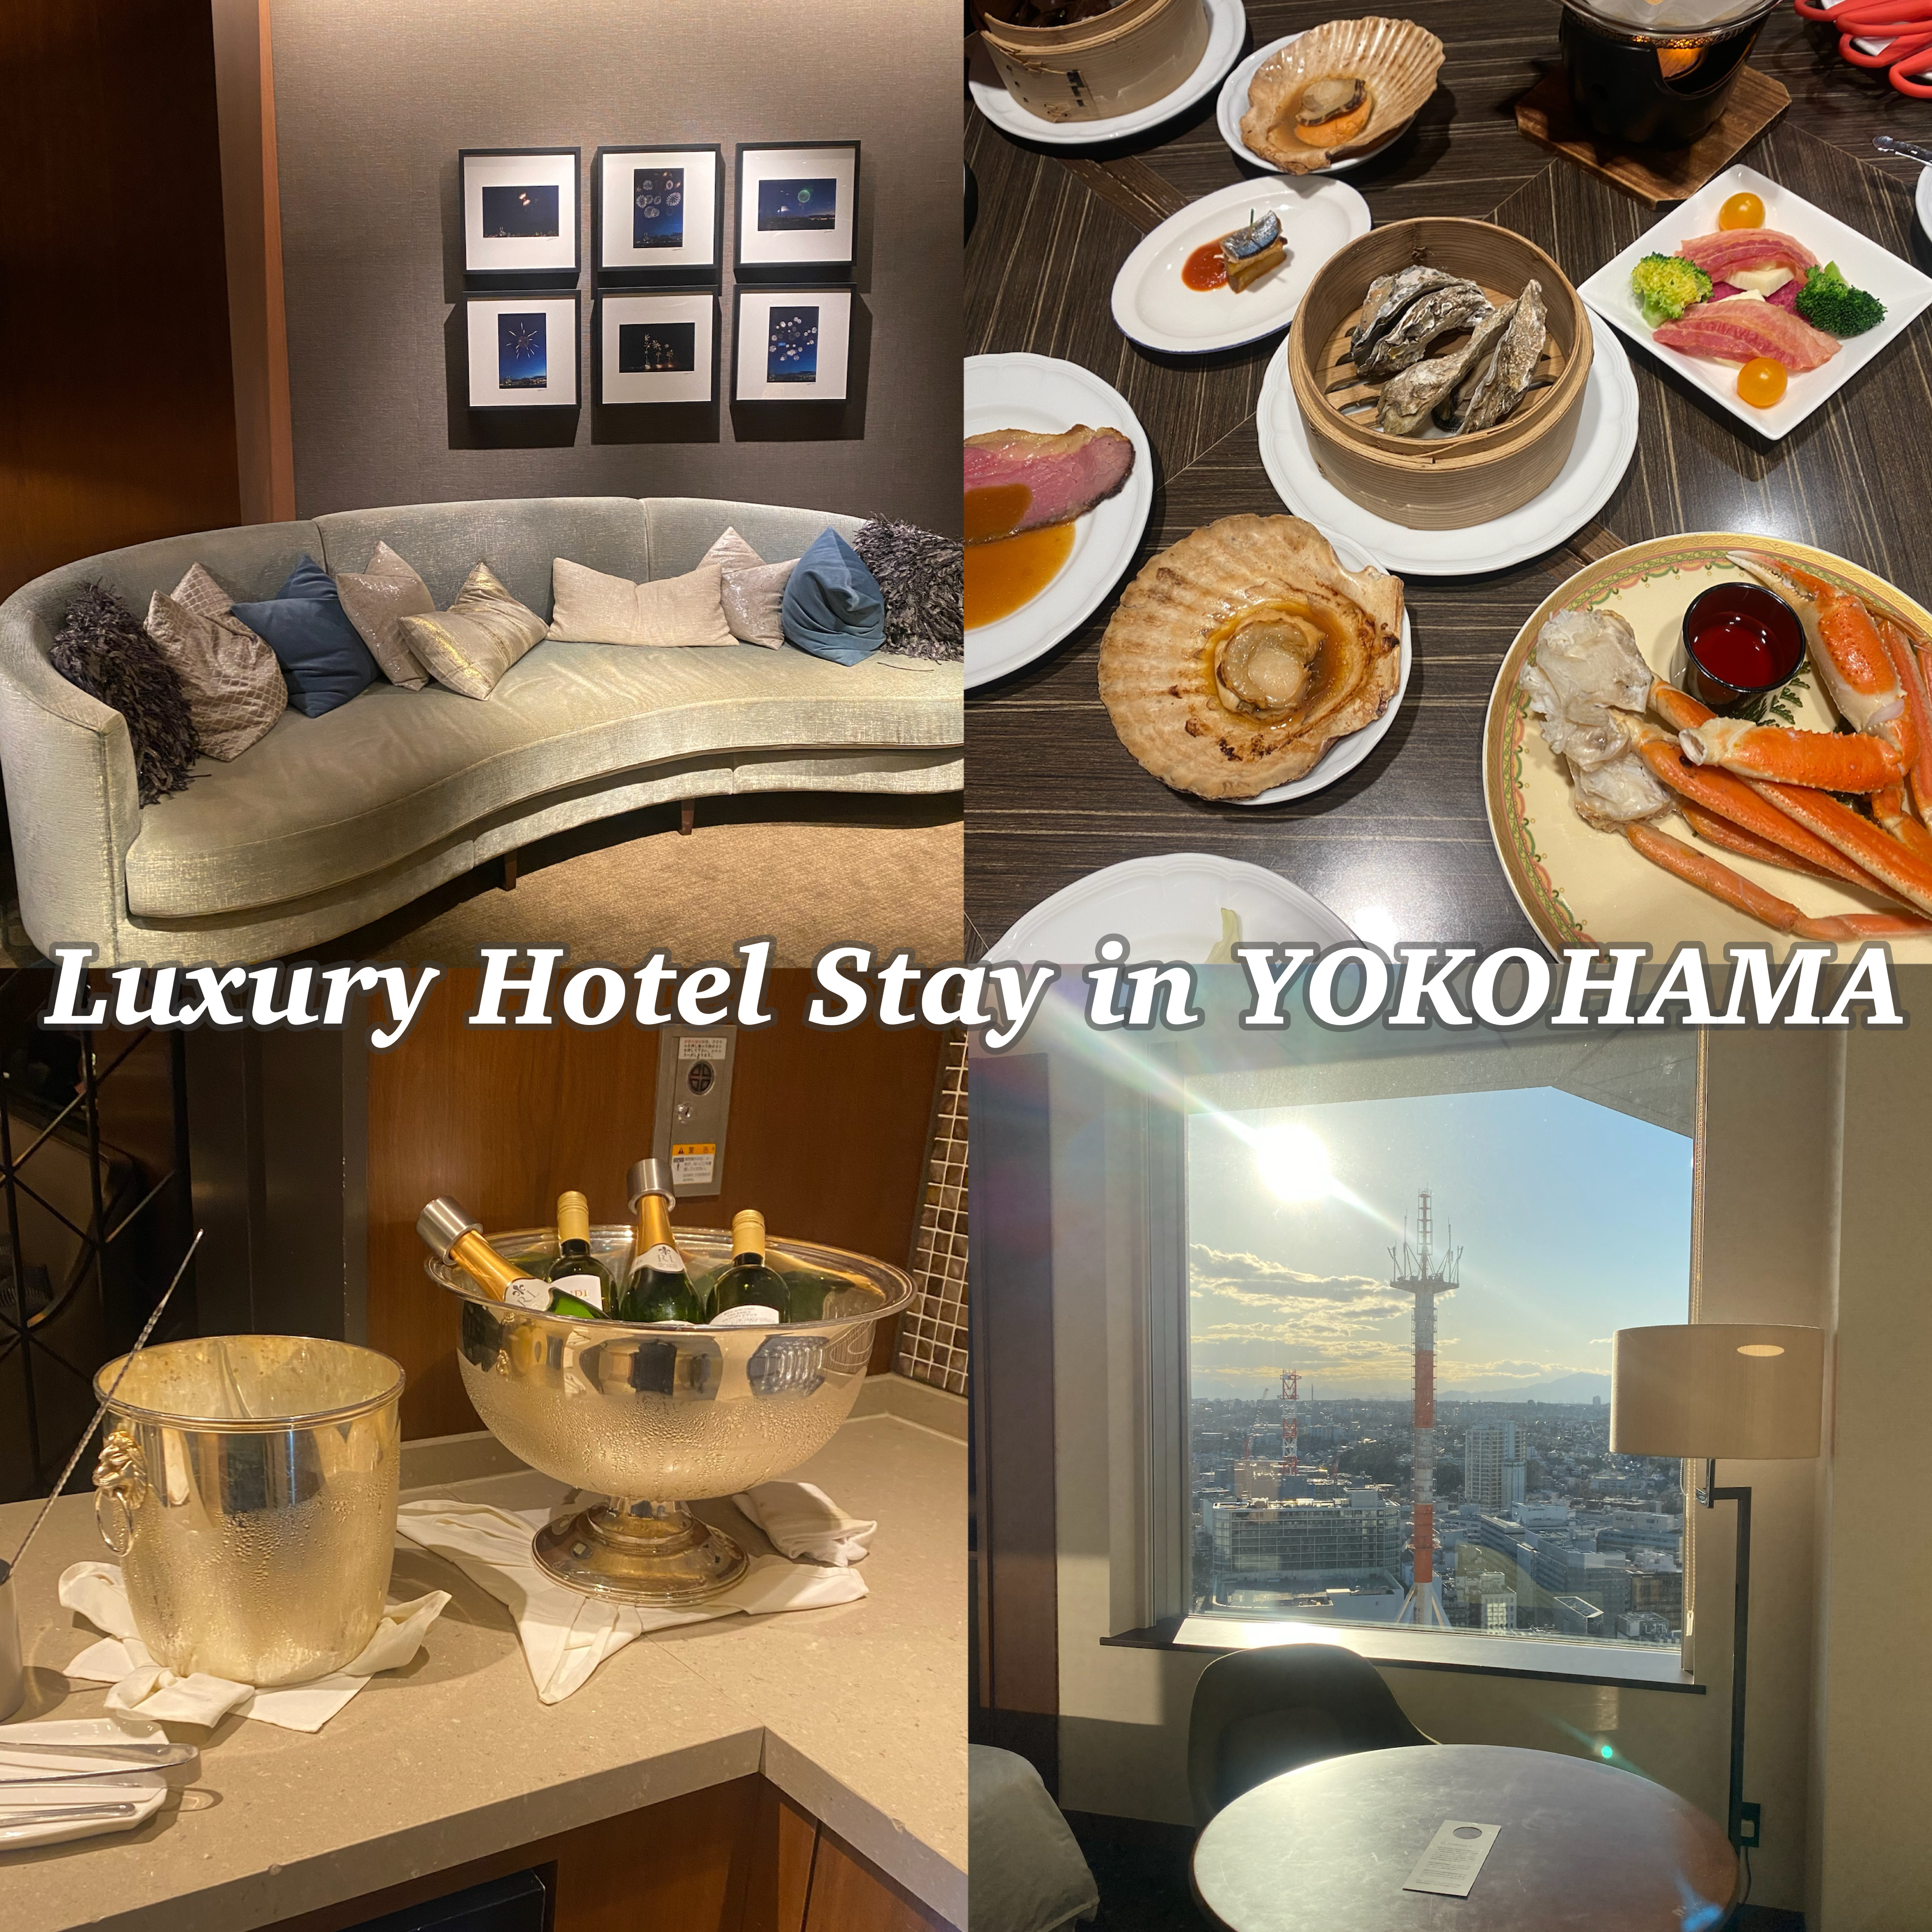 【横浜】駅直結のラグジュアリーホテル「横浜ベイシェラトン ホテル&タワーズ」の贅沢ホテルステイが最高だった